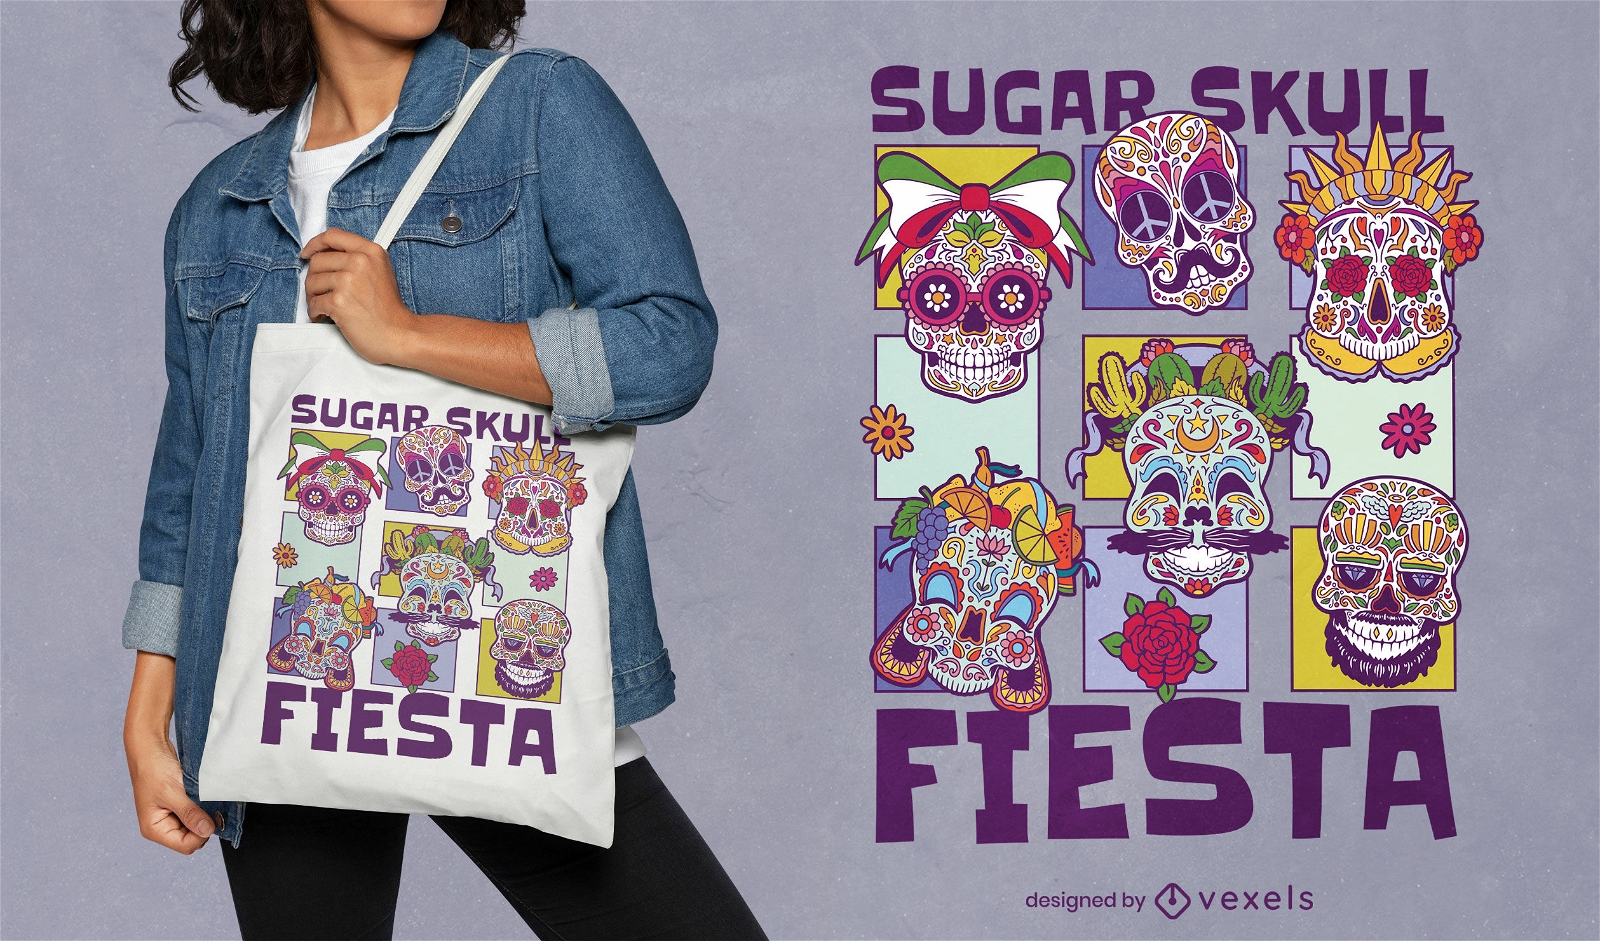 Sugar skull fiesta tote bag design